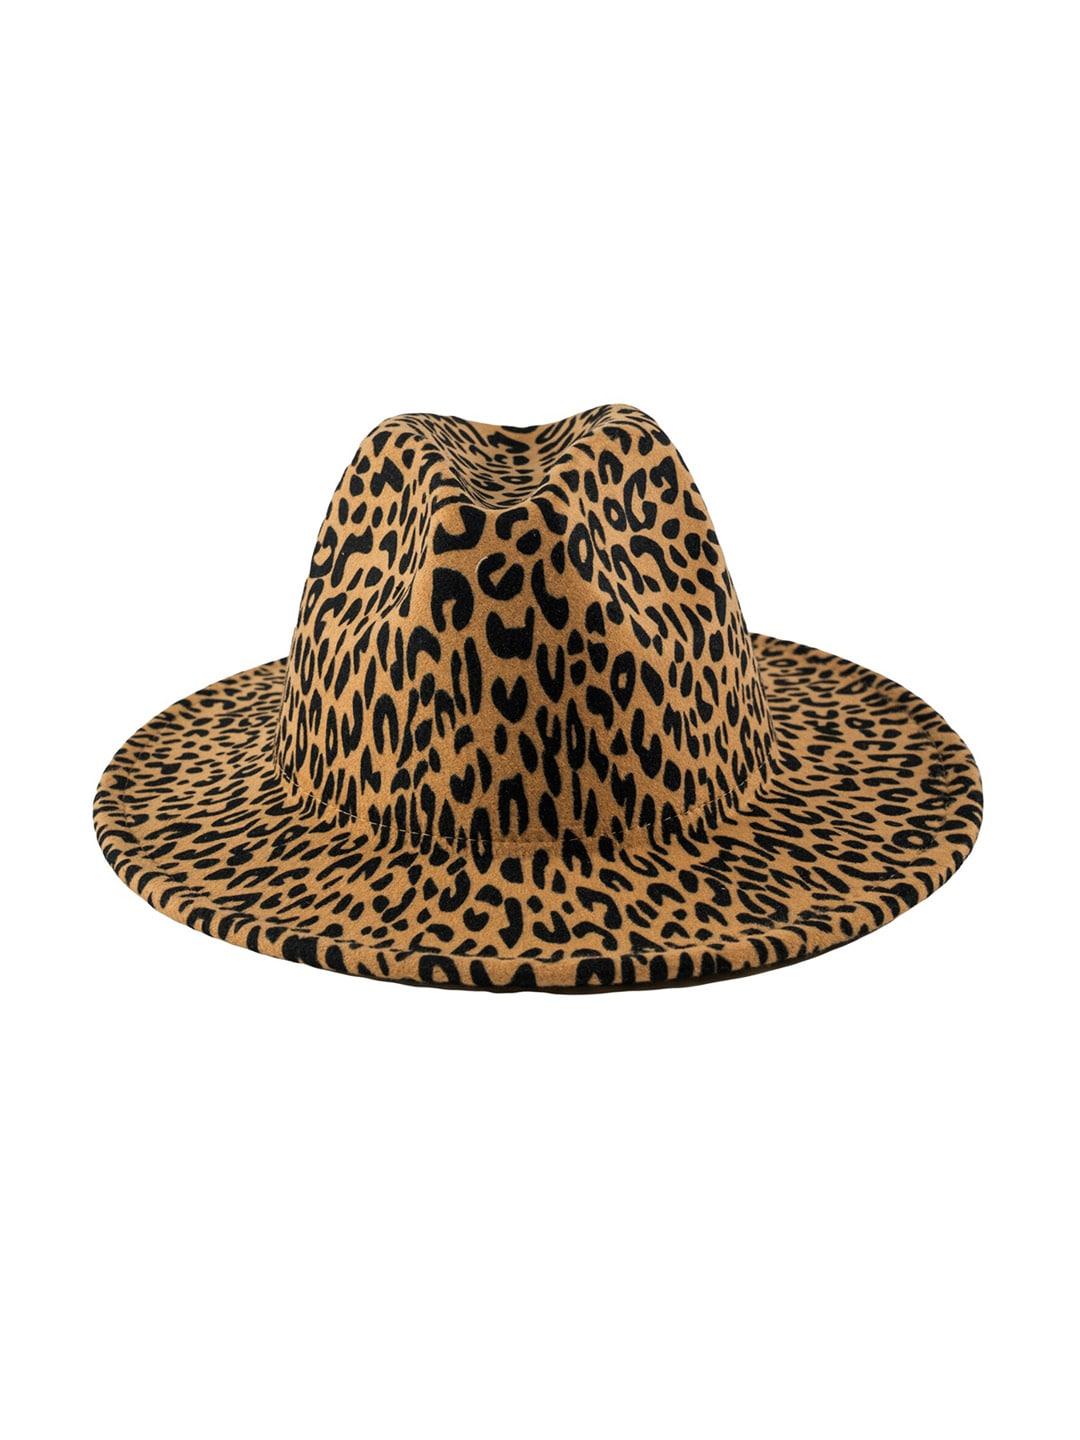 chokore leopard printed fedora hat